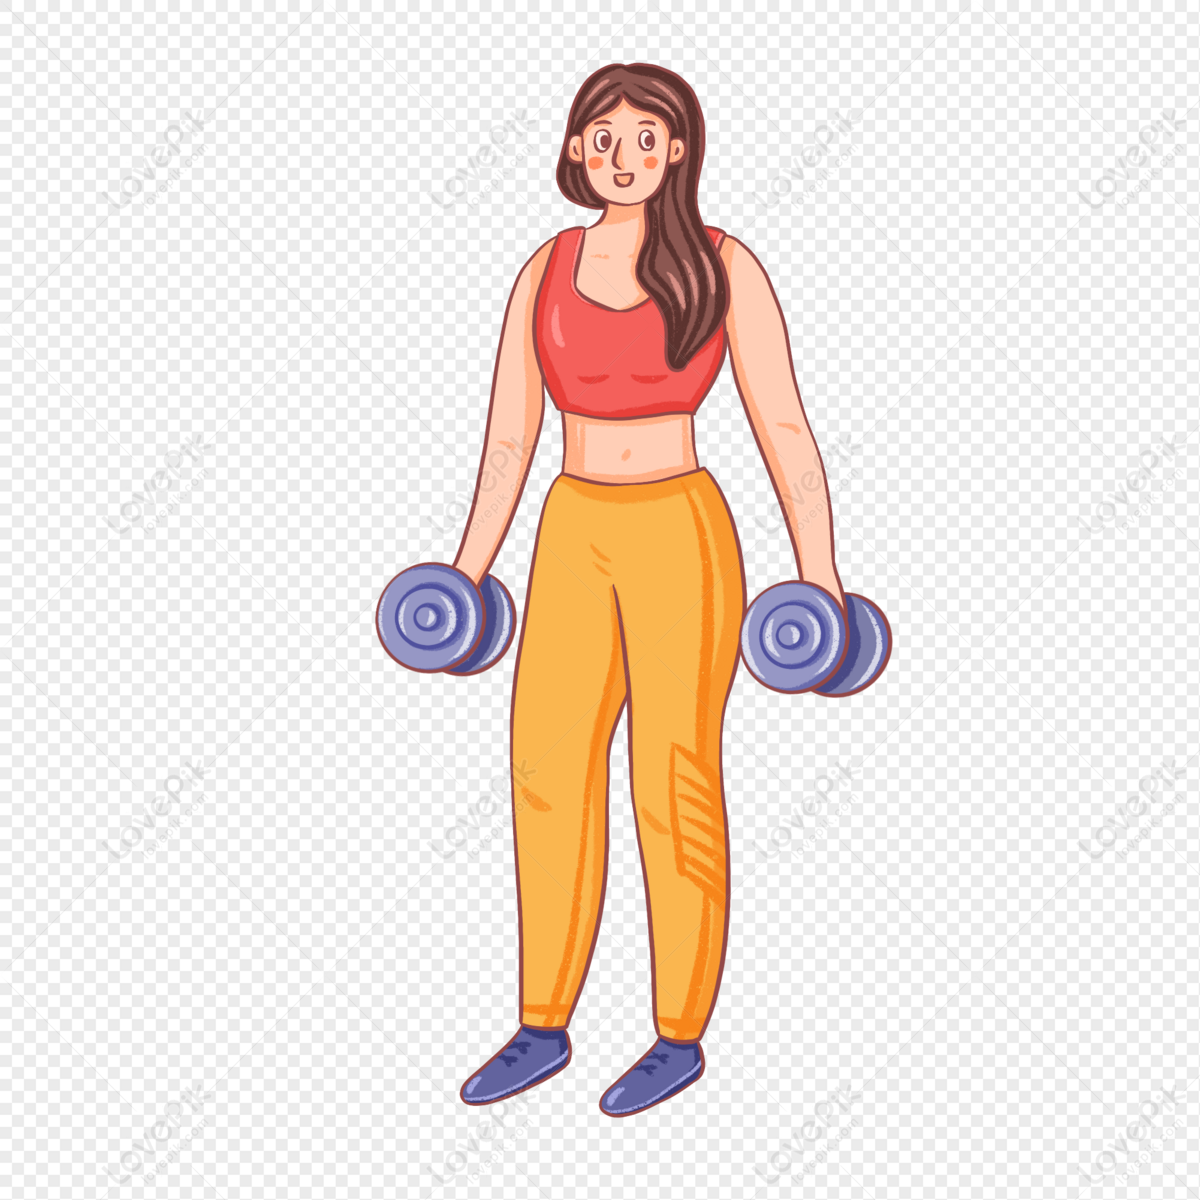 Hình ảnh một người phụ nữ tập luyện cơ thể với quả tạ trong tay sẽ thôi thúc bạn khám phá, hiểu về sức mạnh và động lực trong việc giữ gìn sức khỏe và tinh thần.